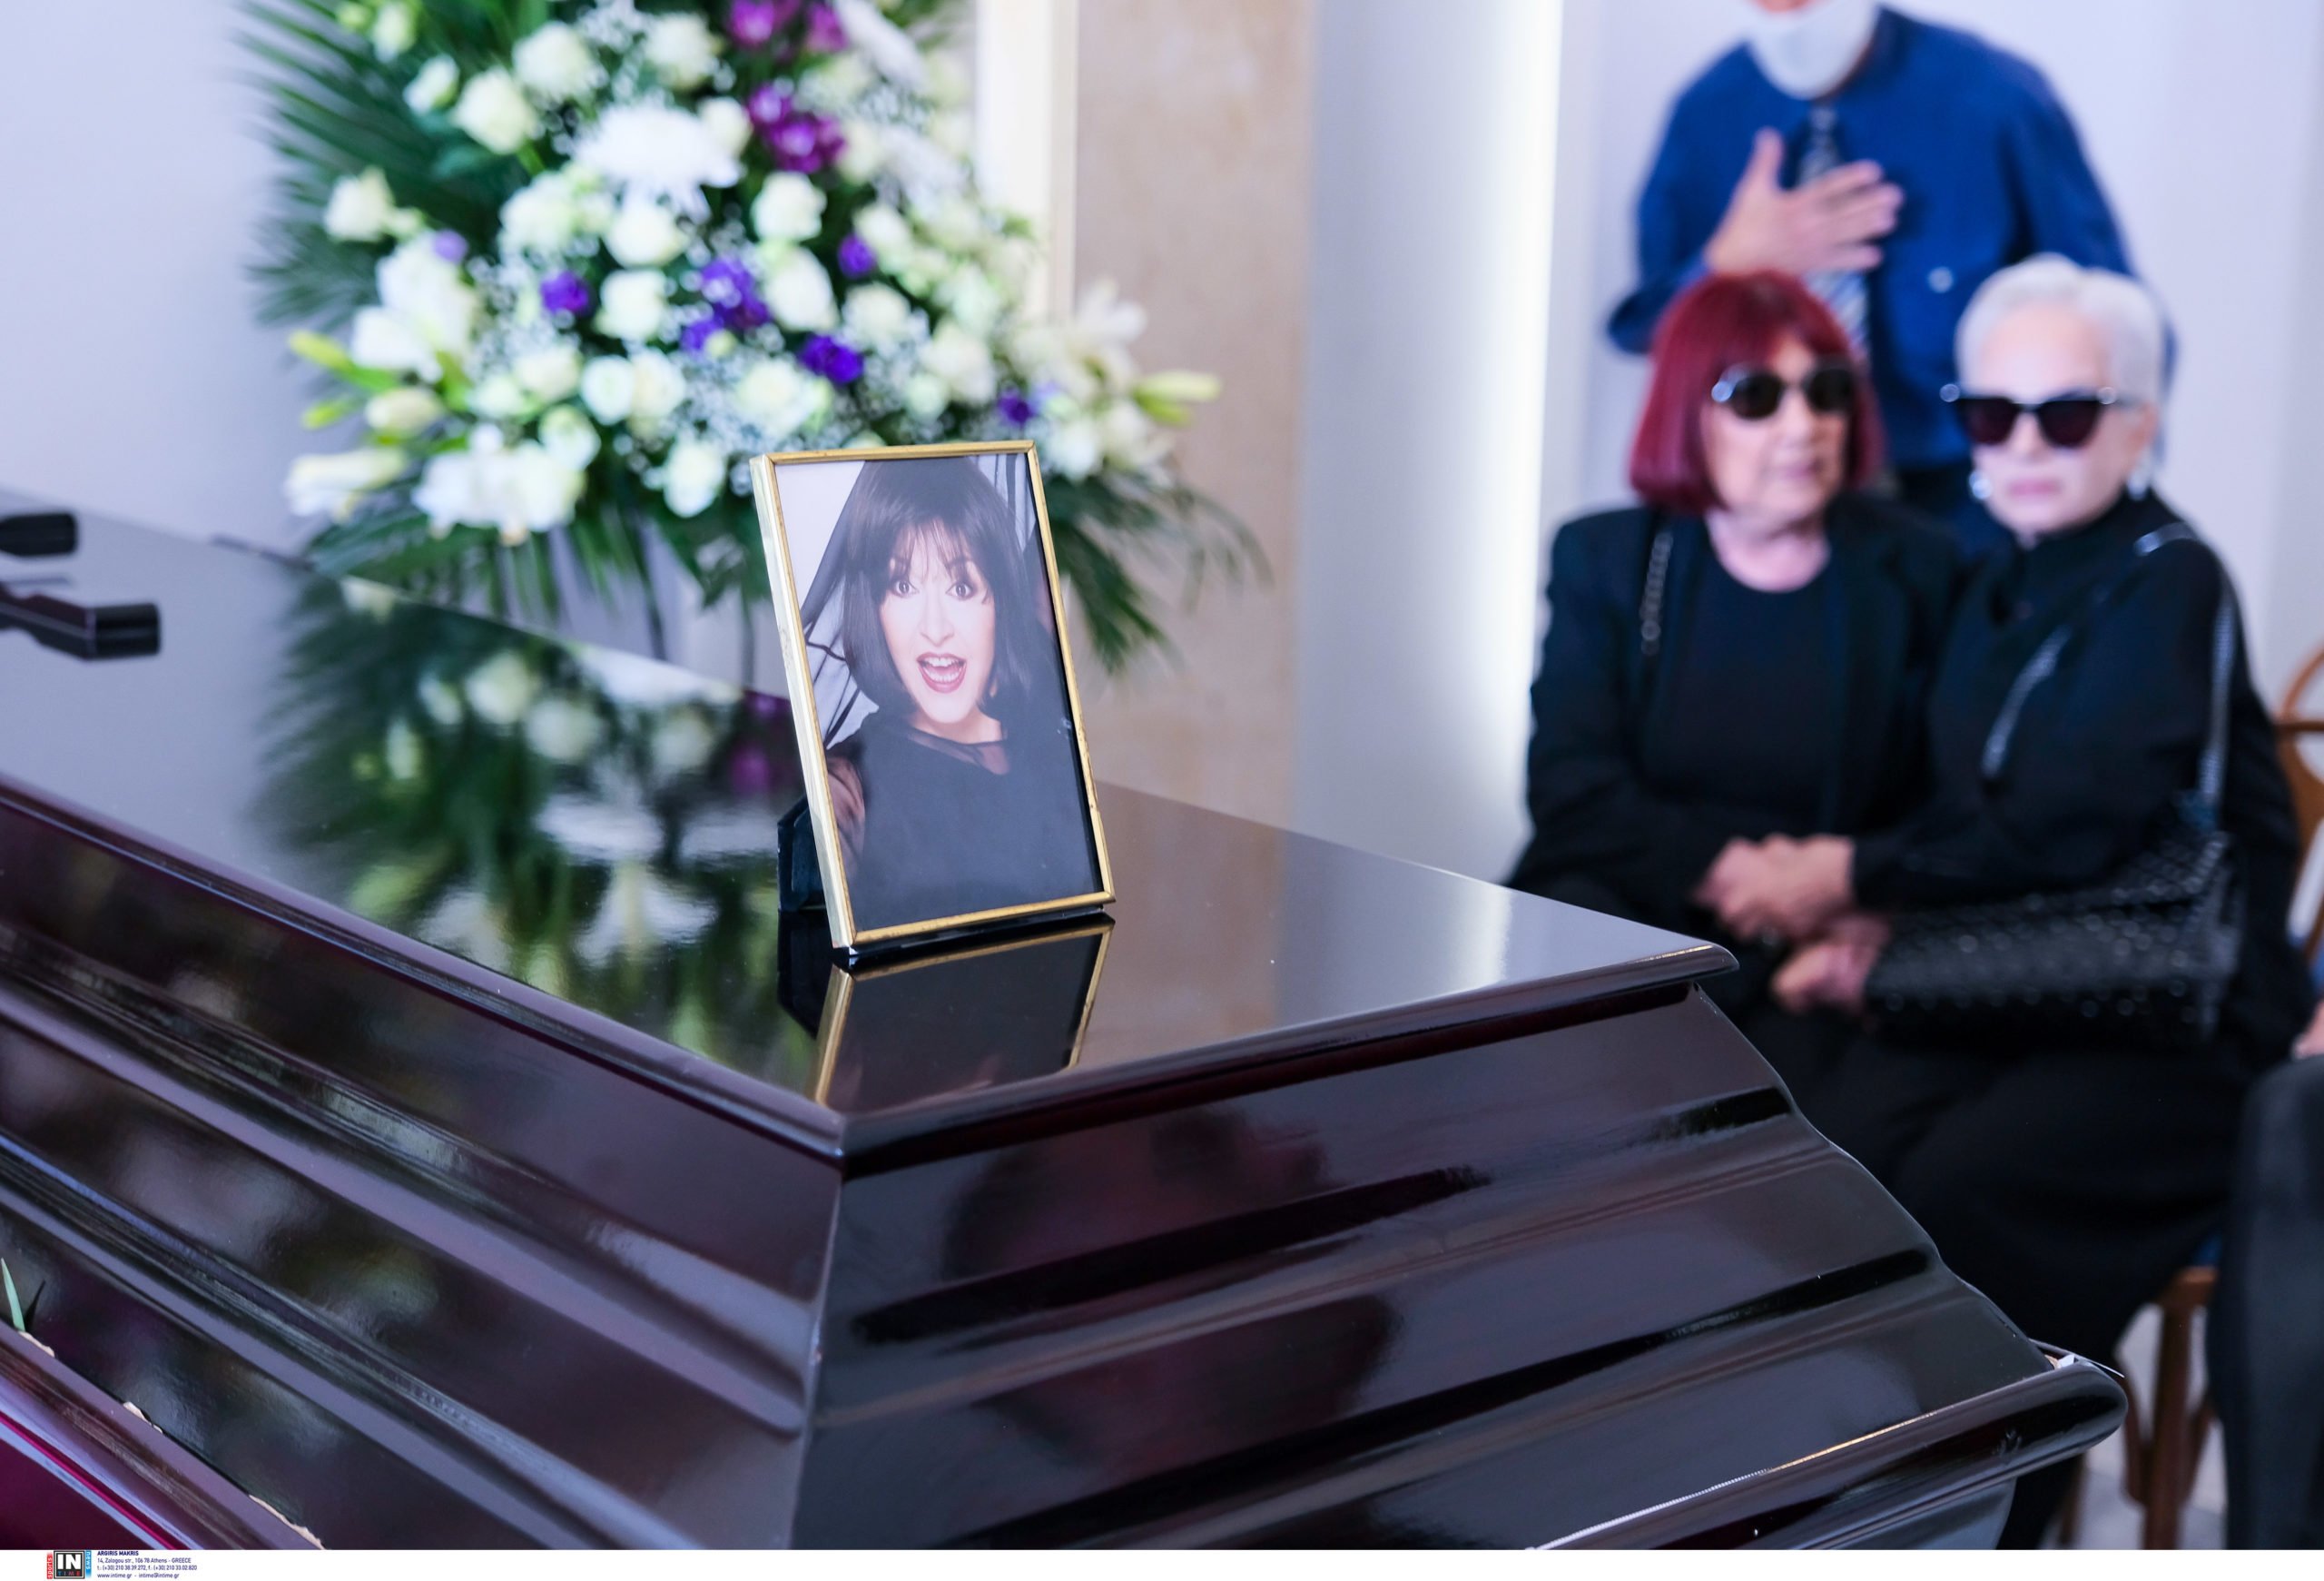 Μάρθα Καραγιάννη: Σε κλίμα συγκίνησης η κηδεία – «Έφυγες χωρίς να προλάβω να σου πω πόσο σε αγαπώ»